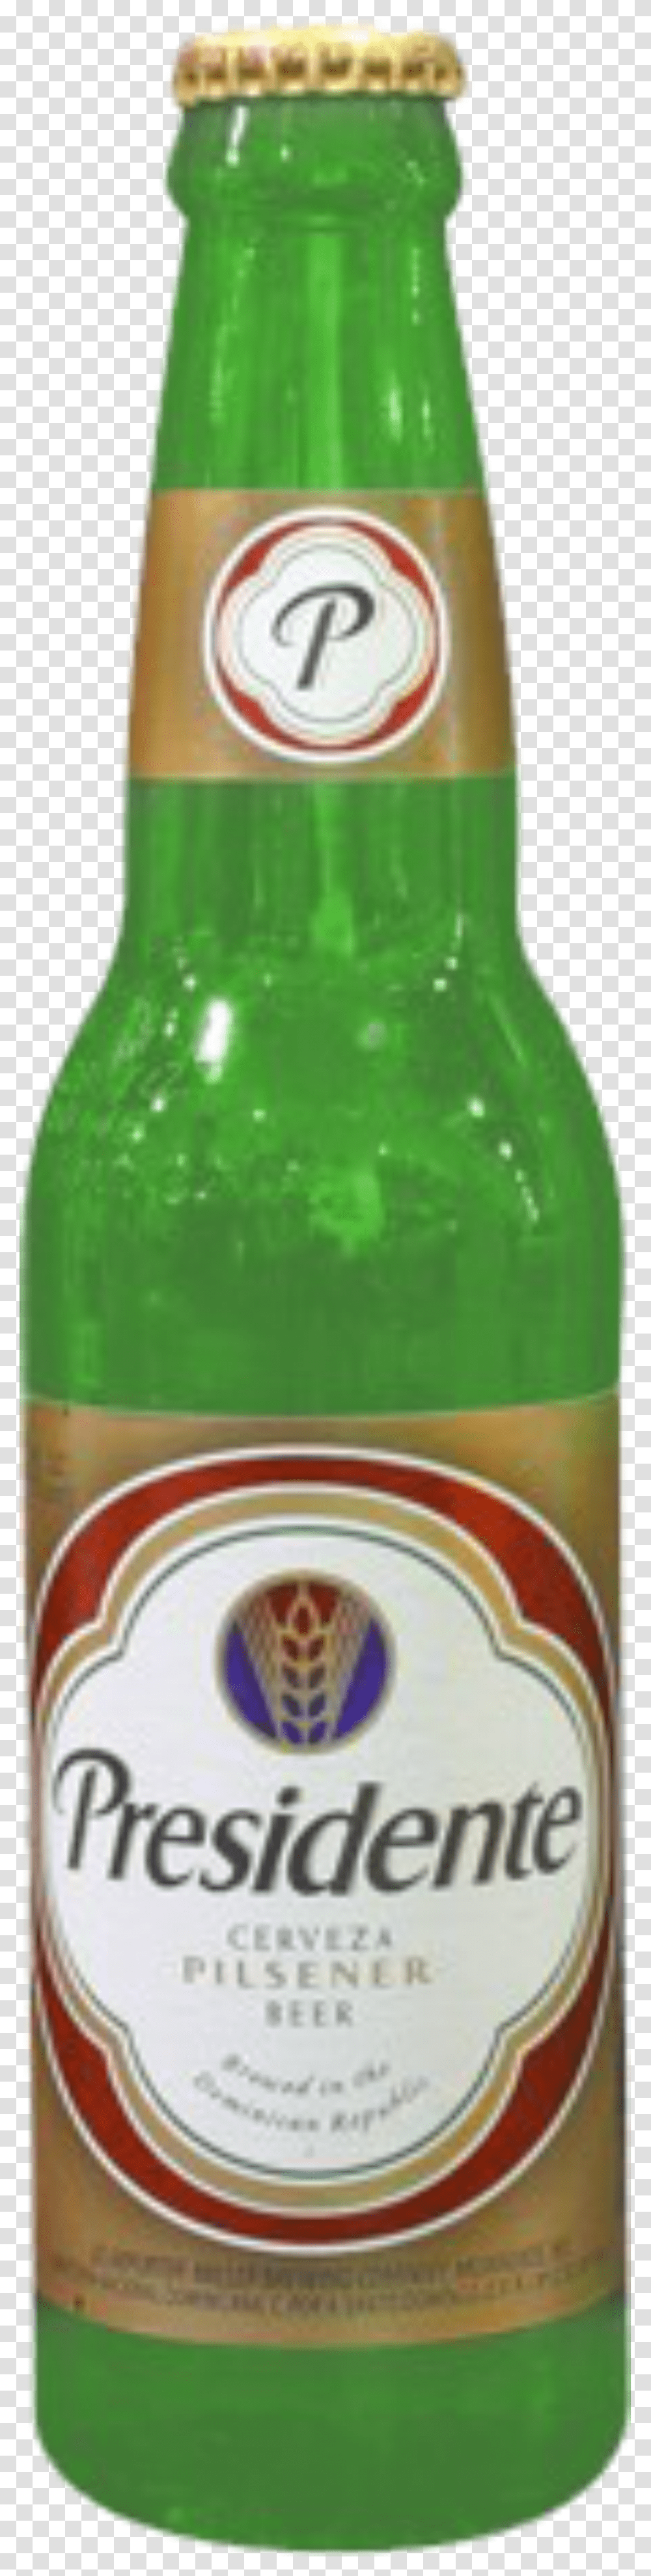 Presidente Beer, Bottle, Pop Bottle, Beverage, Drink Transparent Png